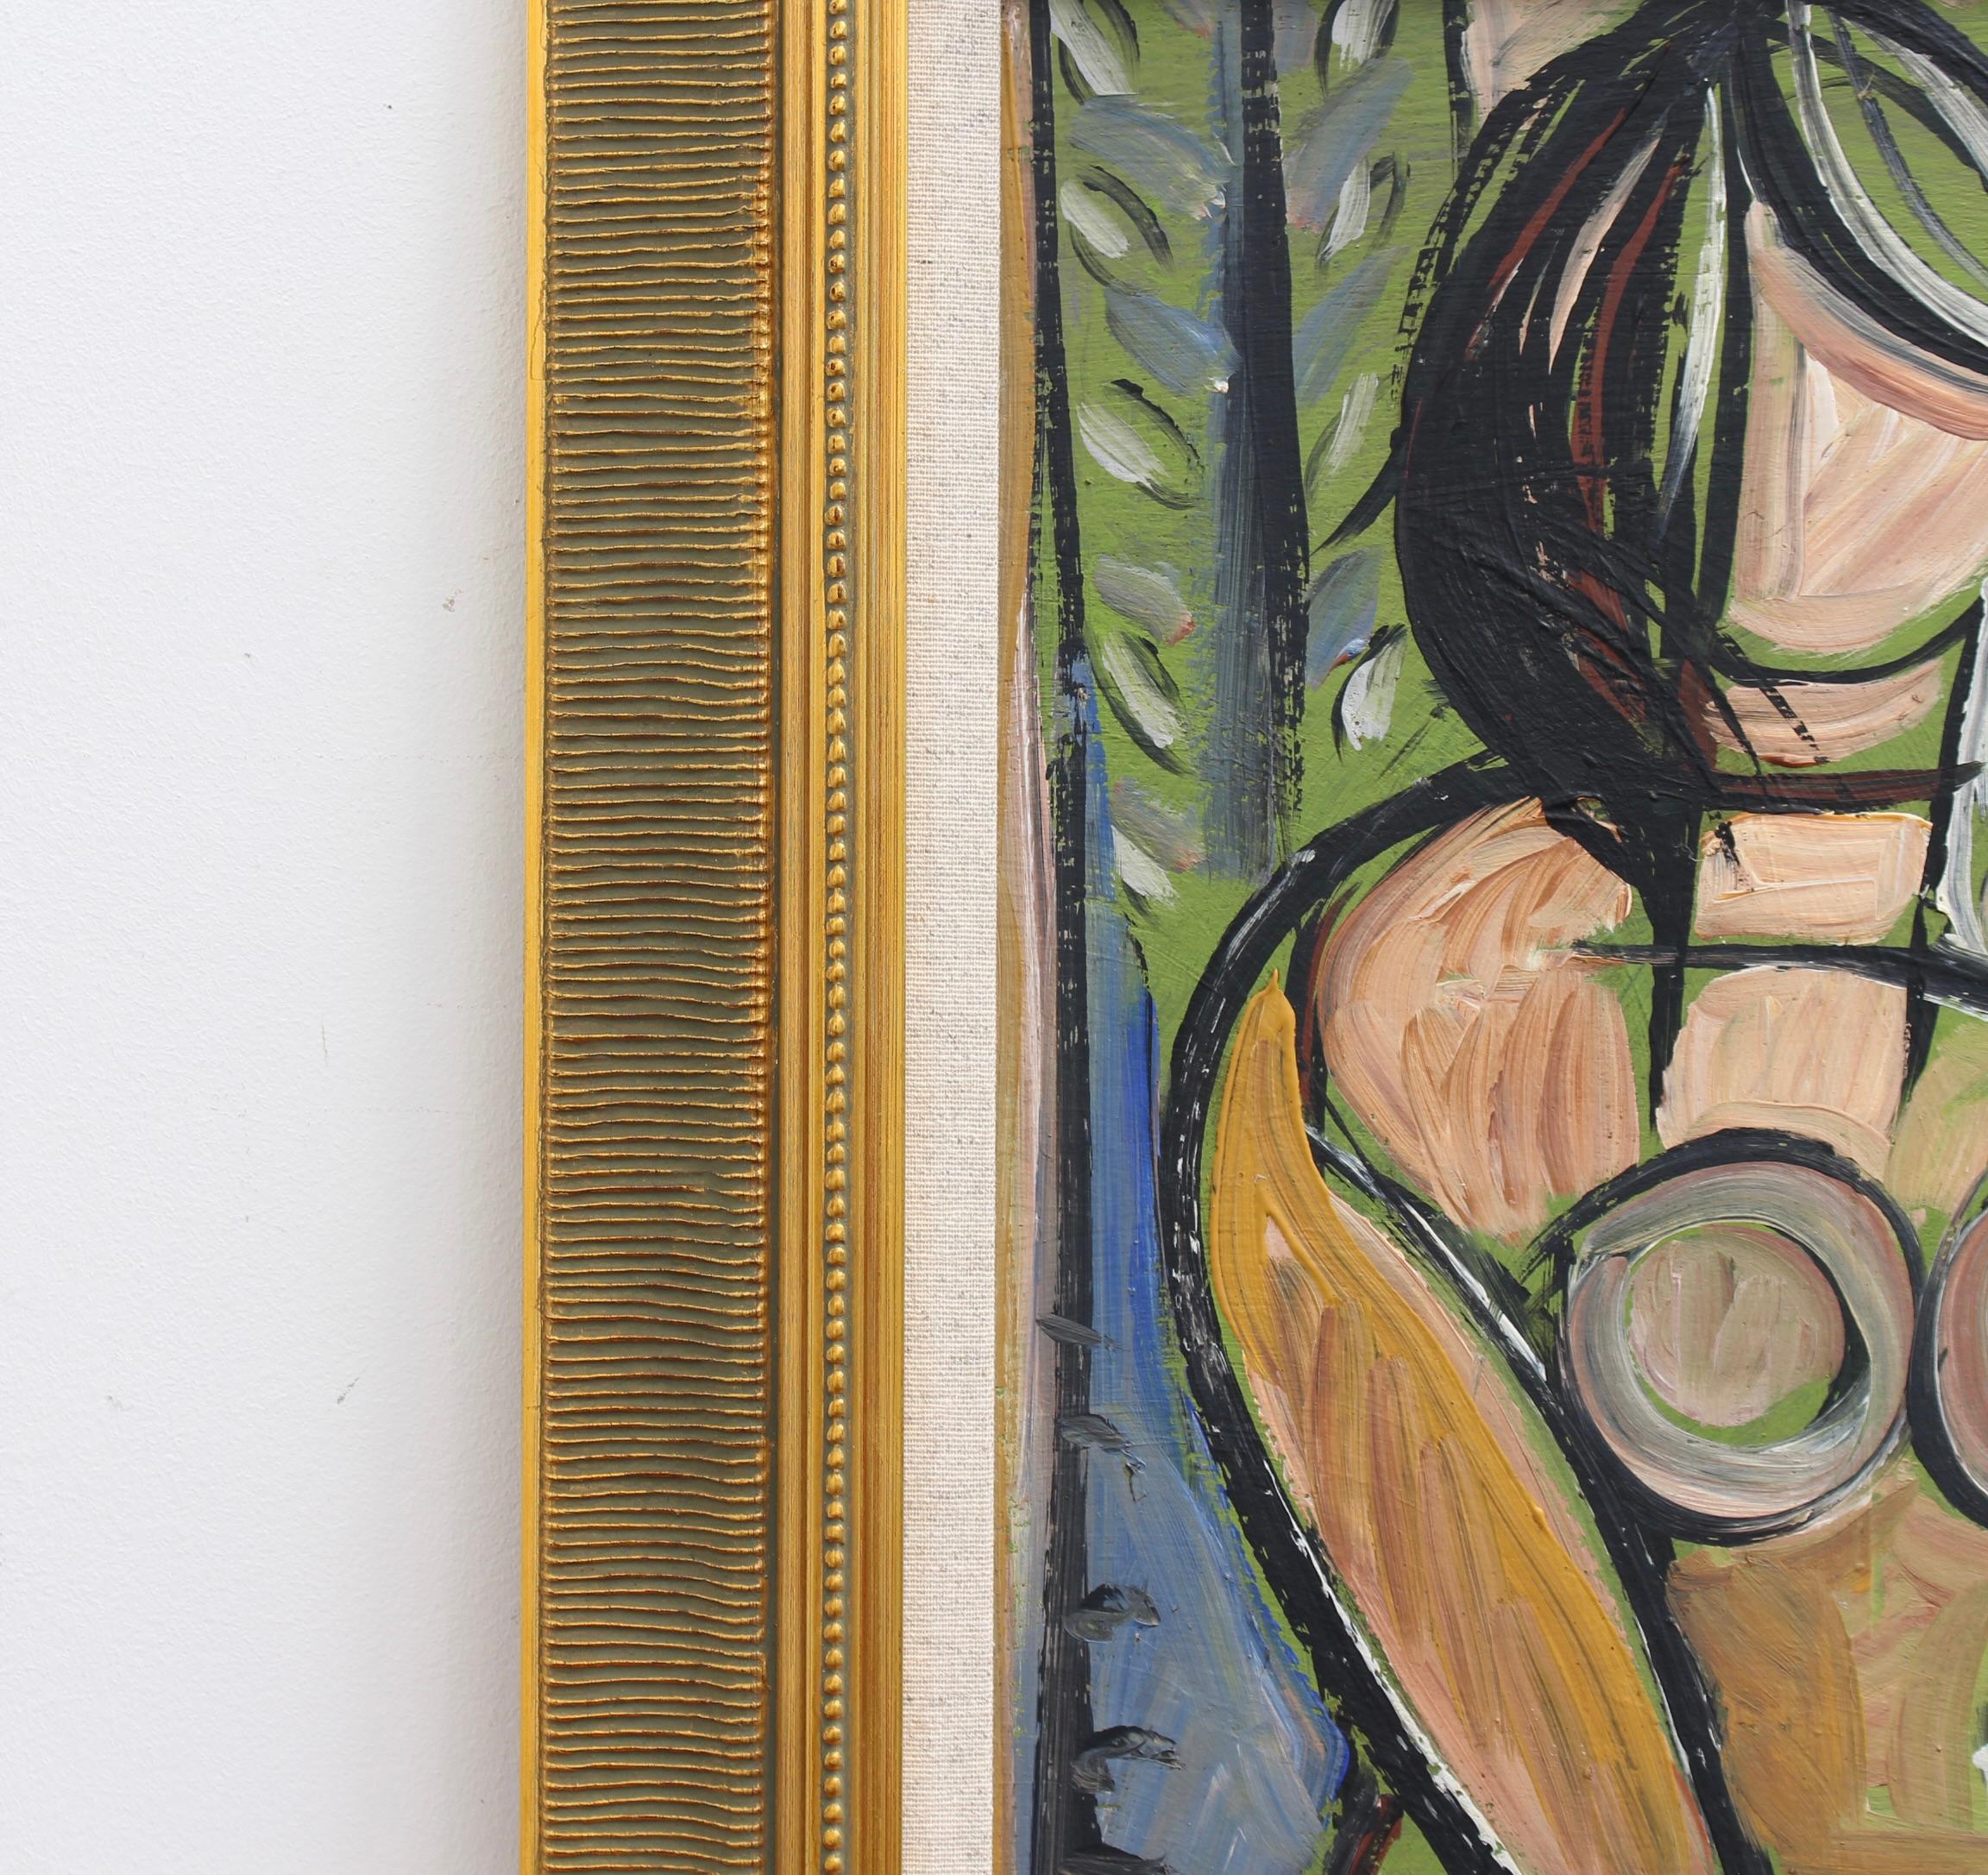 Portrait d'une jeune femme, huile sur carton, école allemande (vers les années 1960). Portrait sensuel d'une jeune femme au milieu du siècle, peint dans le style des expressionnistes et des cubistes de l'époque. Vous ne savez pas s'il s'agit d'un